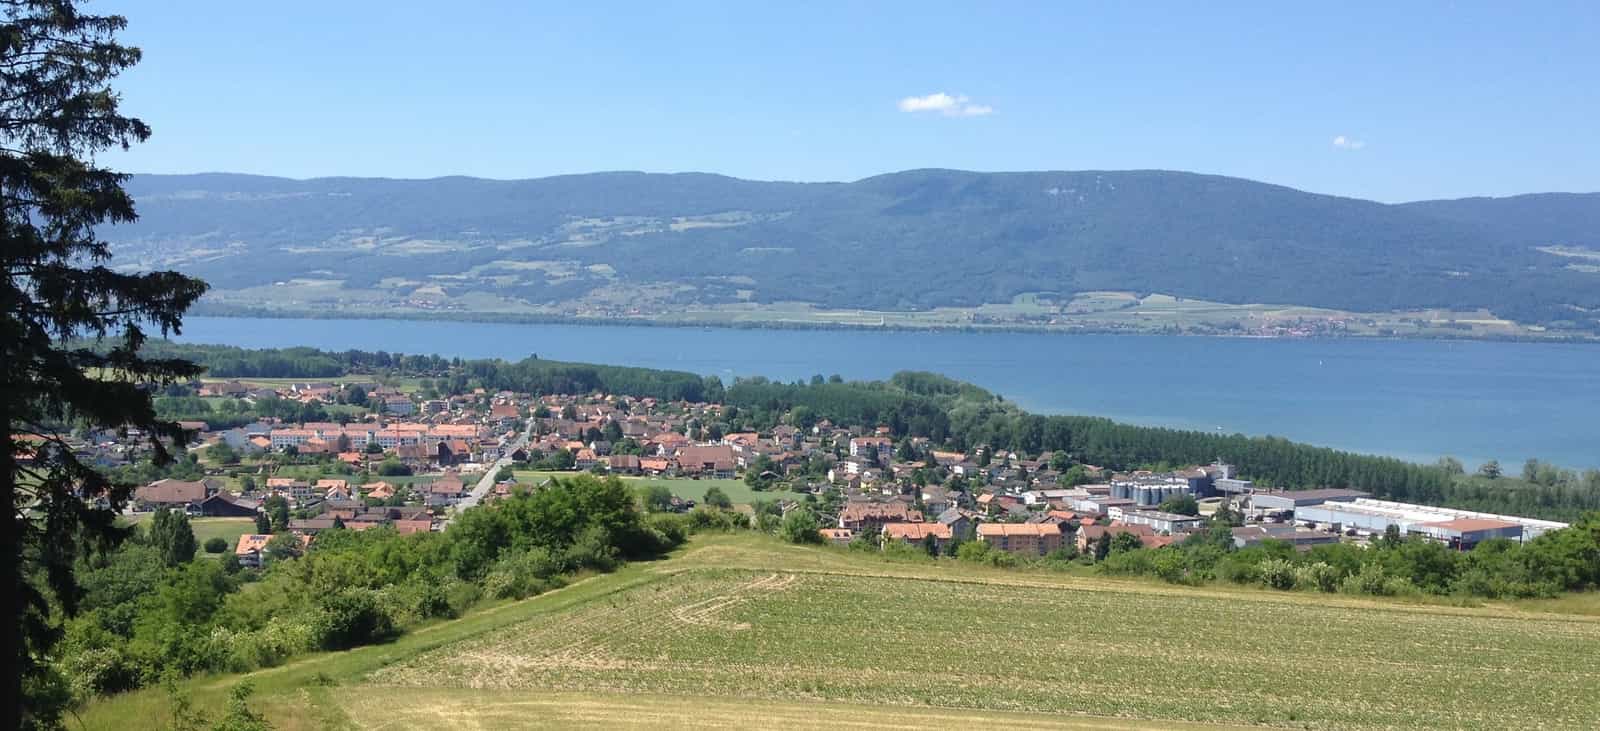 Ansicht von Yvonand im Kanton Waadt in der Schweiz.